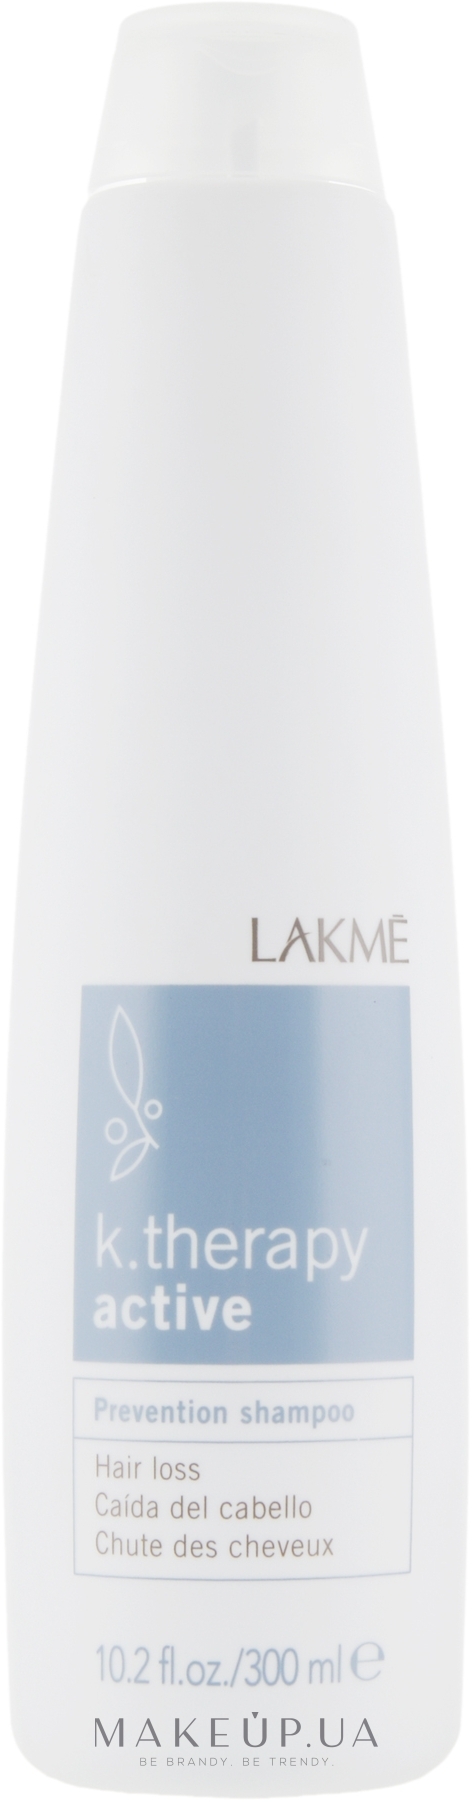 Лікуваьний шампунь-актив для профілактики випадіння волосся - Lakme K.Therapy Active Prevention Shampoo — фото 300ml